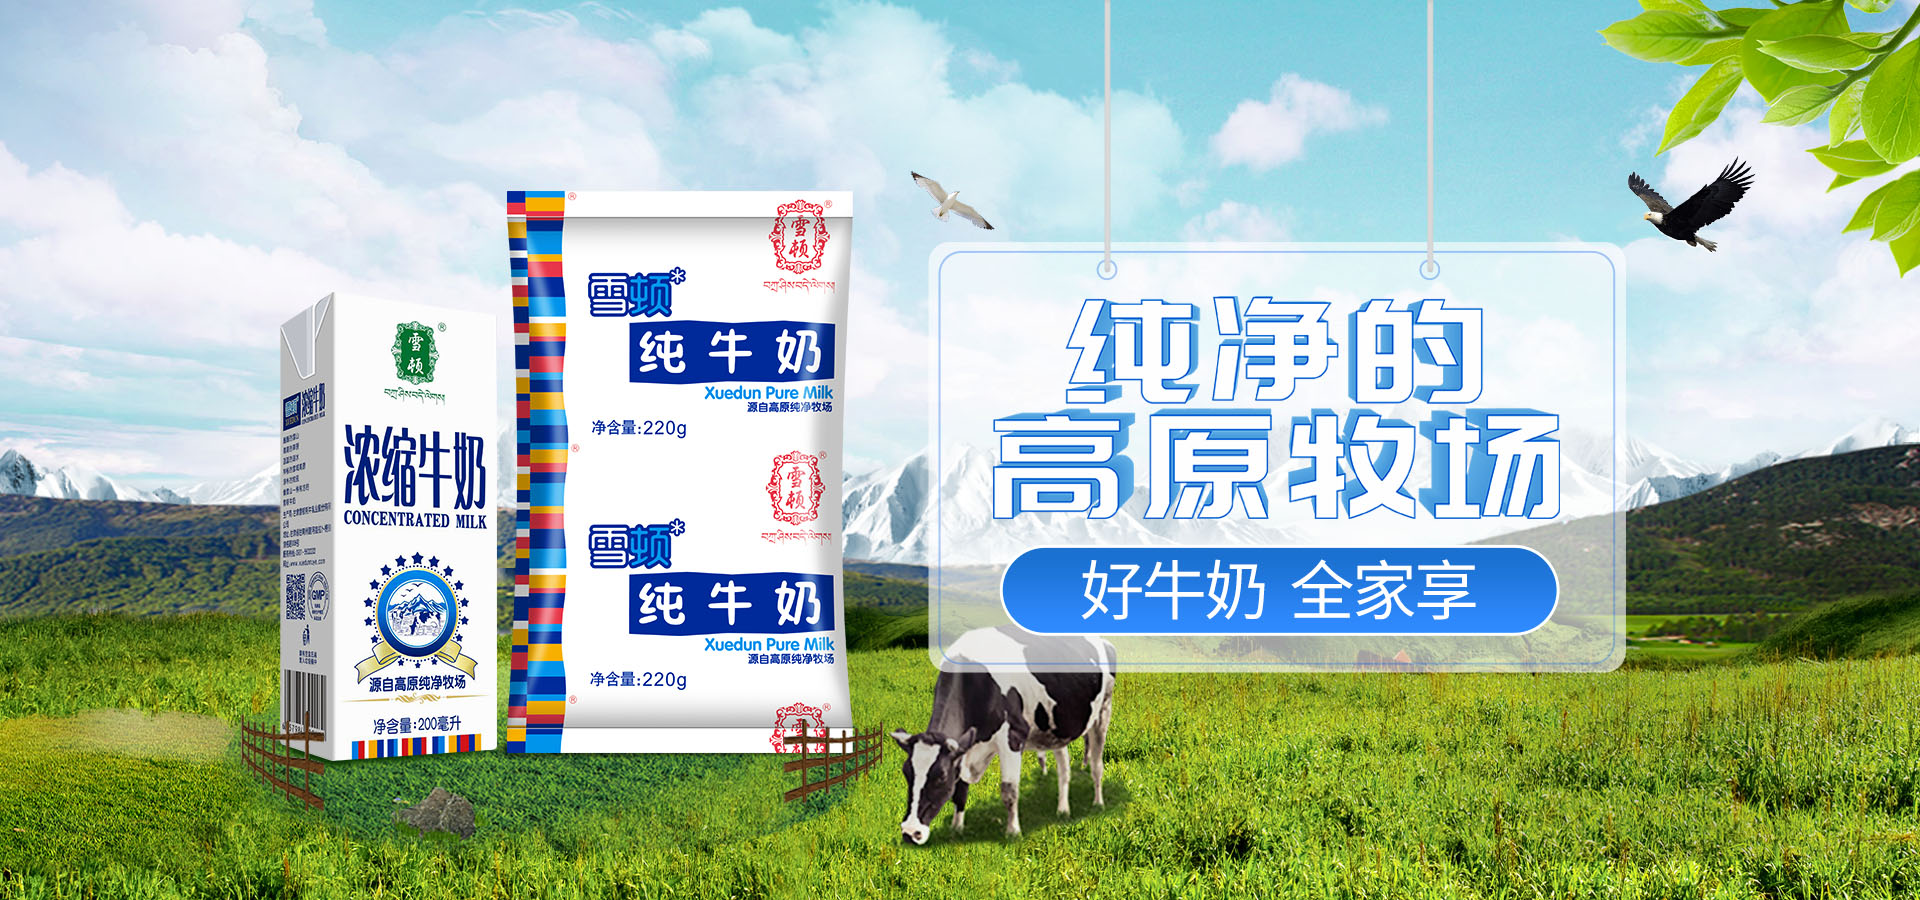 甘肅雪頓牦牛乳業股份有限公司首頁大圖